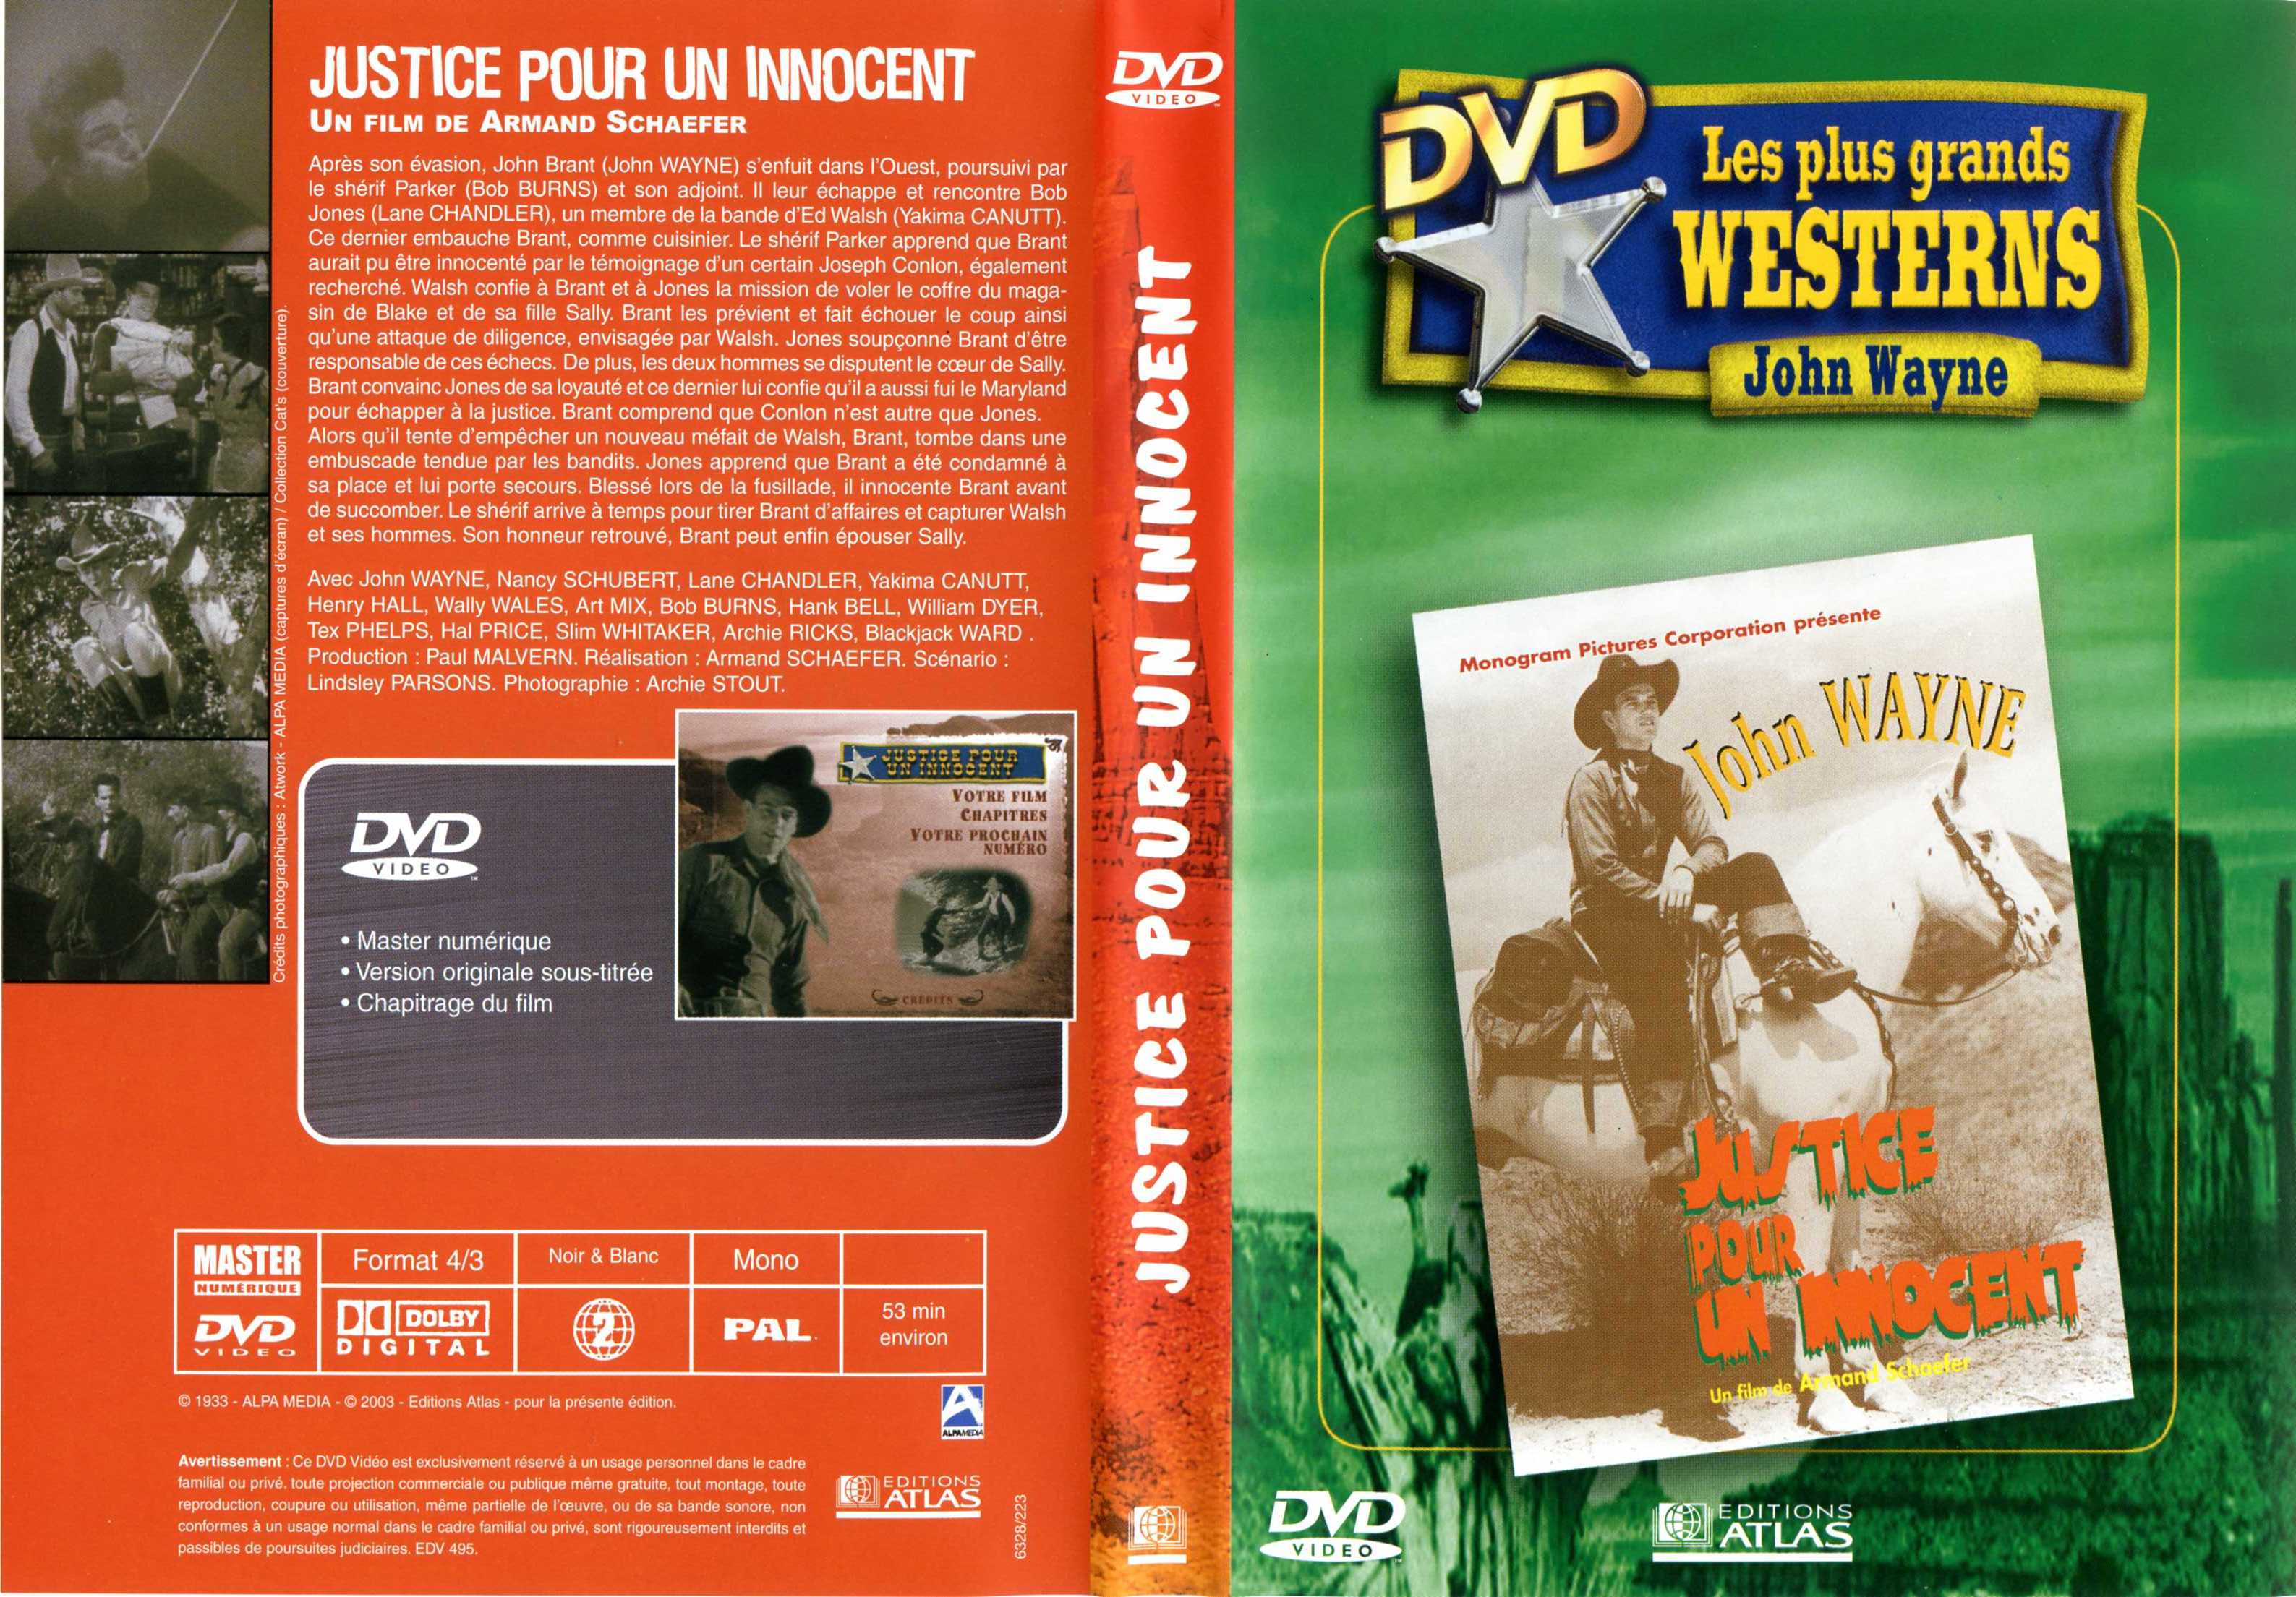 Jaquette DVD Justice pour un innocent